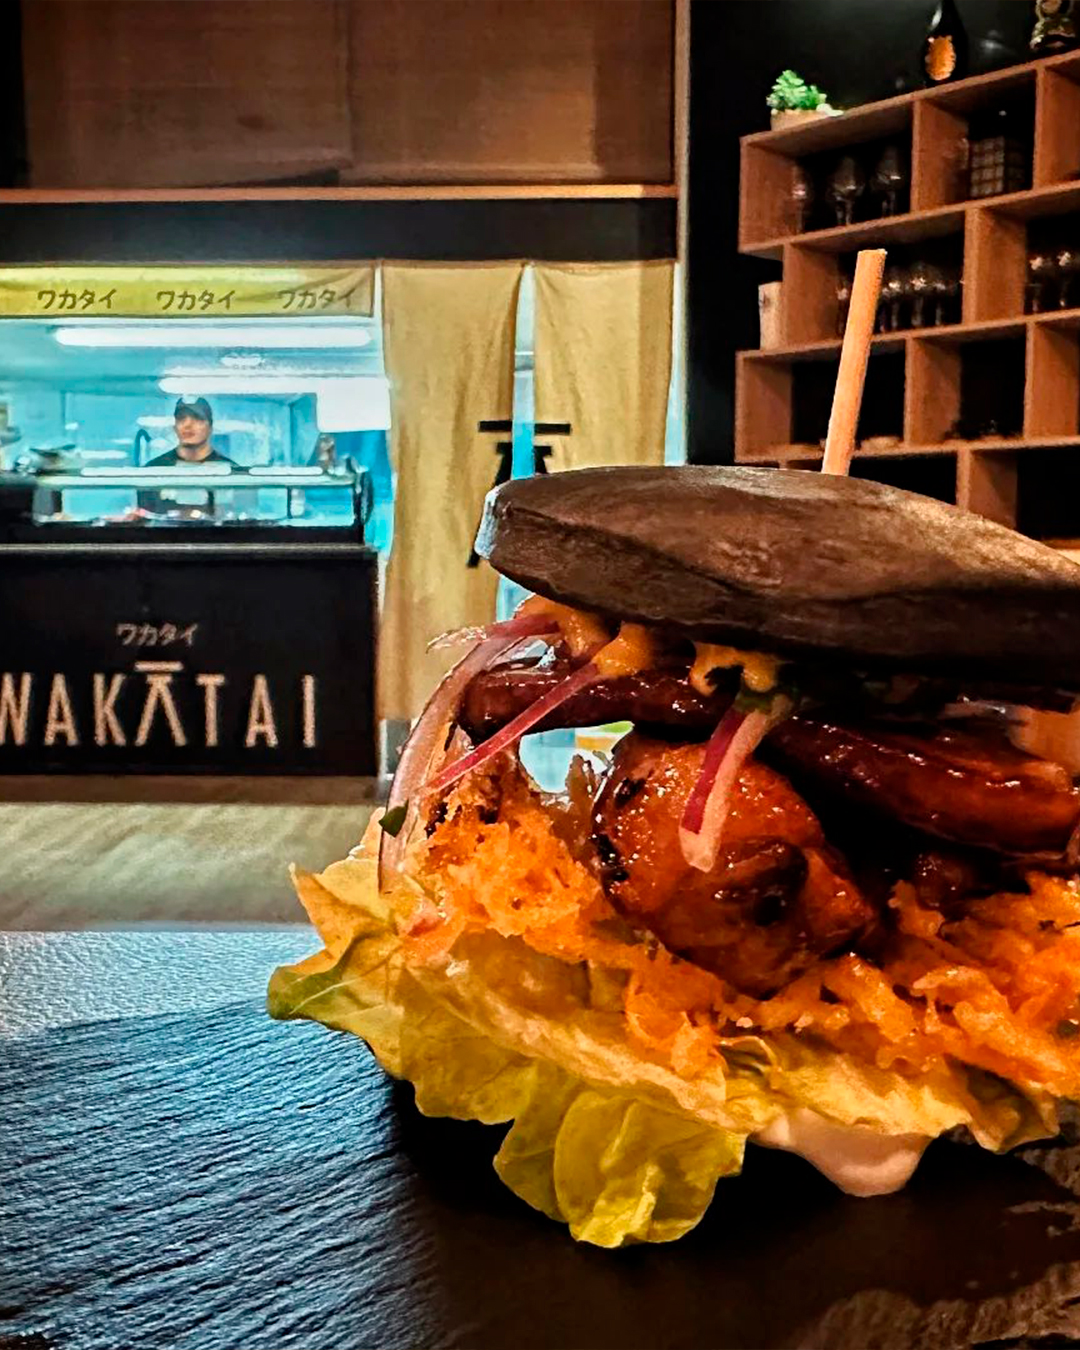 restaurante-wakatai-nikkei-andorra-13.jpg